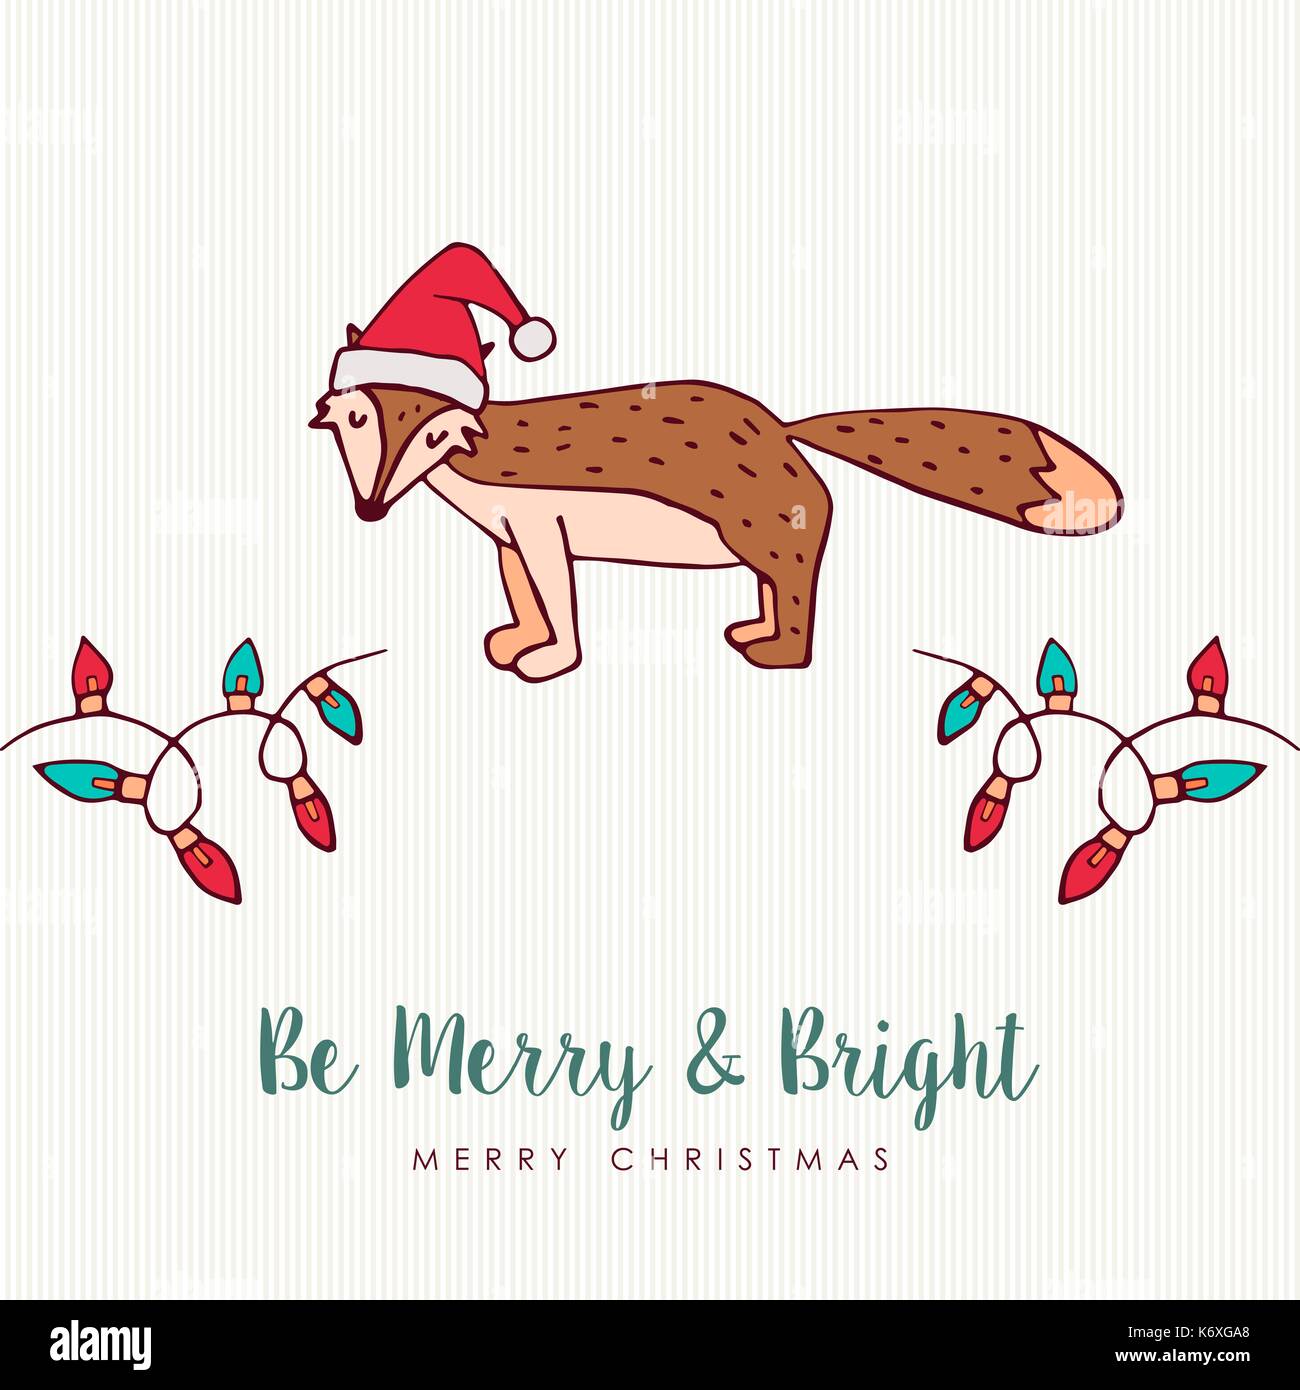 Frohe Weihnachten hand Tier Grußkarte erstellt. Cute fox Cartoon mit Weihnachtsmütze, handschriftliche Typografie Zitat und Urlaub Beleuchtung Dekoration. EPS 10 ve Stock Vektor